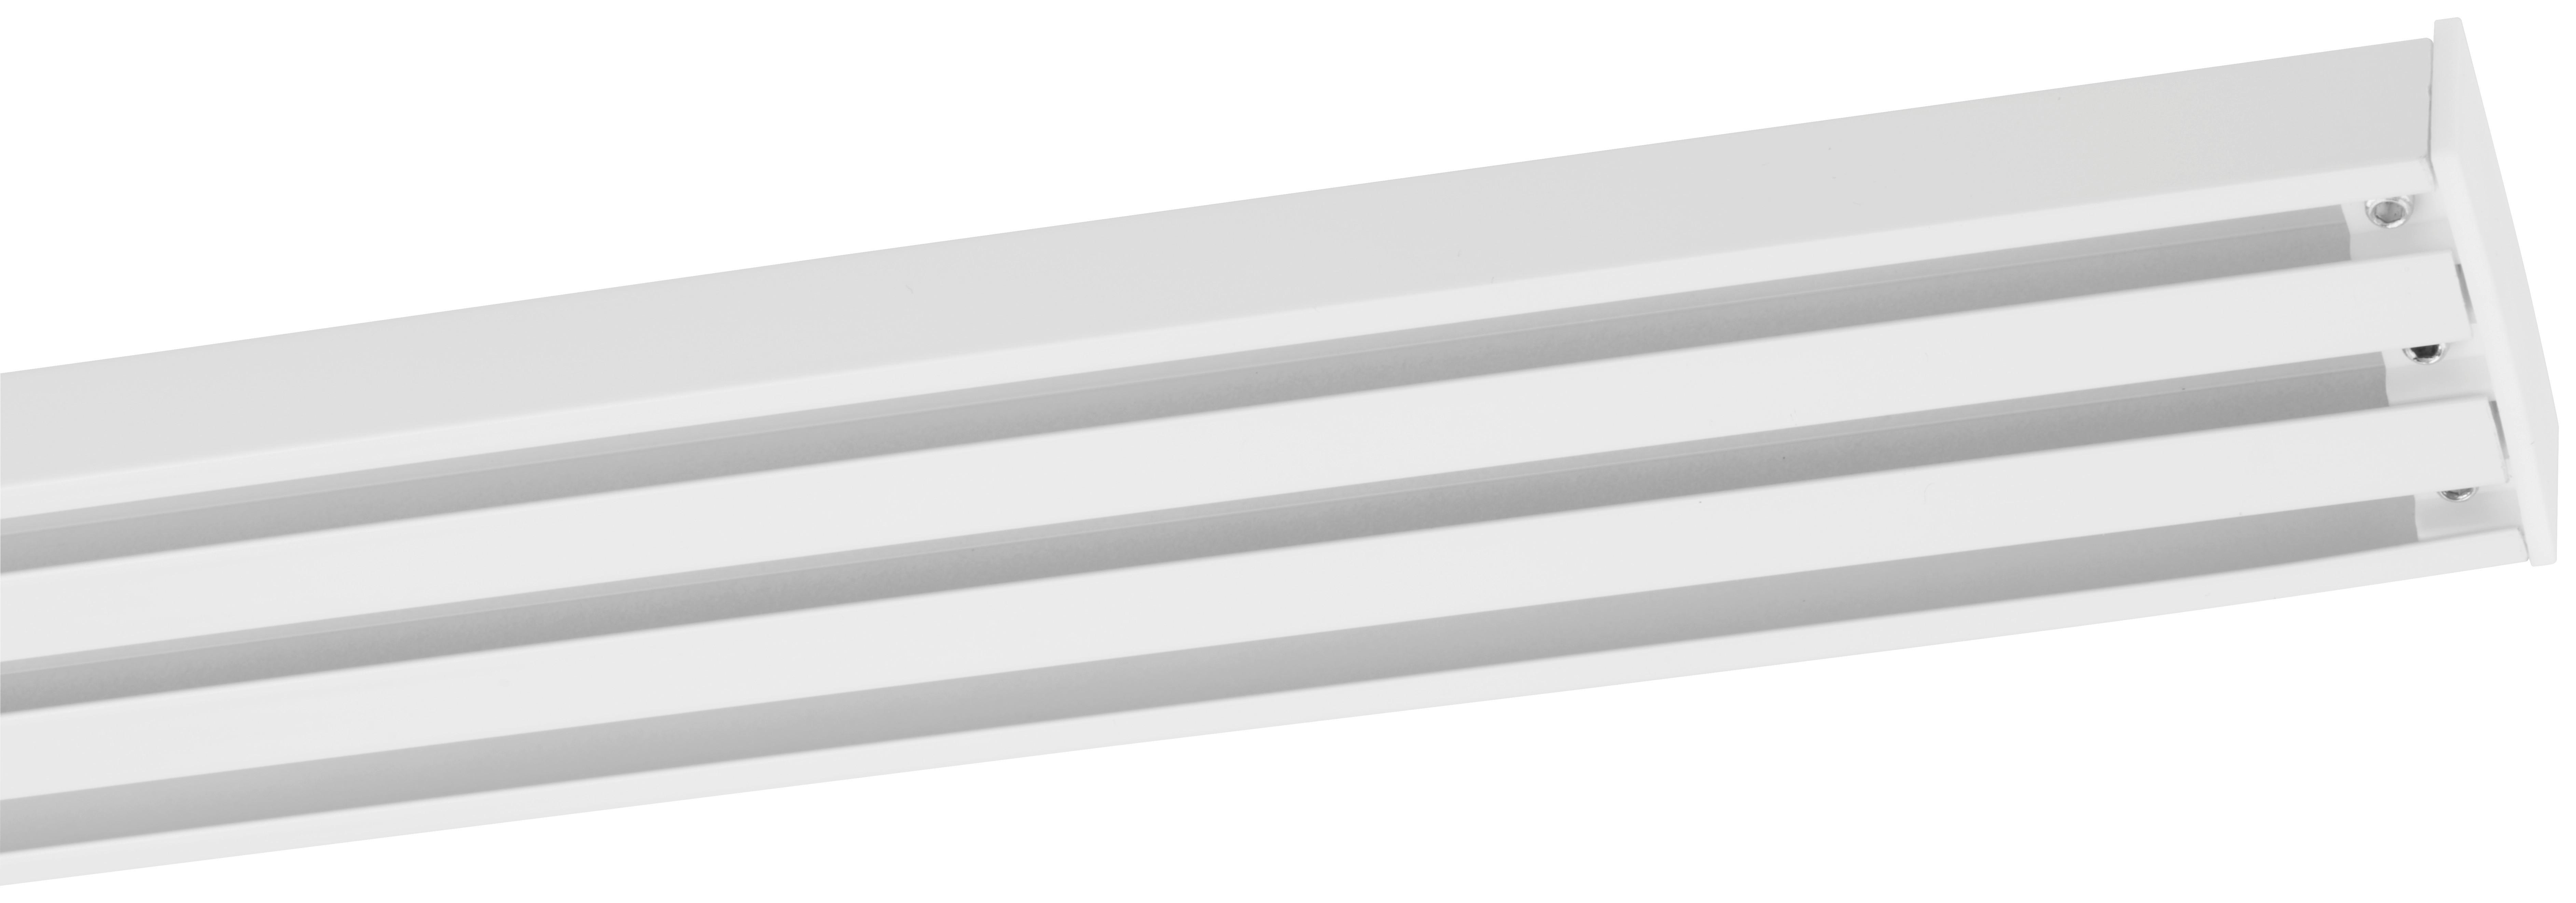 Kolejnička Na Závěsy Style, 160cm - bílá, kov (160cm) - Premium Living